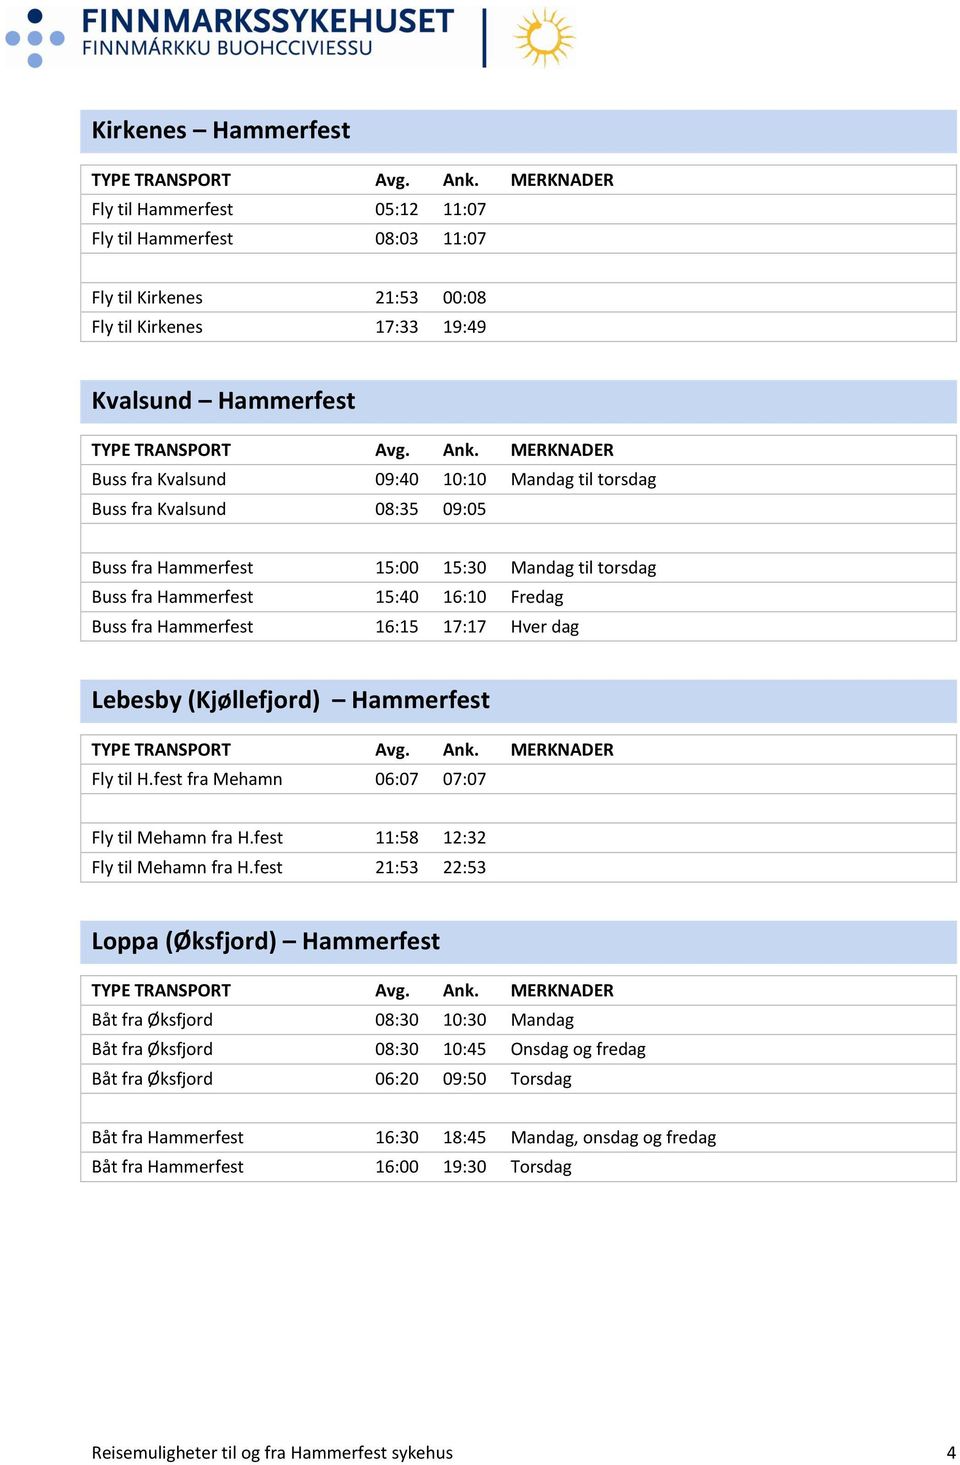 Hammerfest Fly til H.fest fra Mehamn 06:07 07:07 Fly til Mehamn fra H.fest 11:58 12:32 Fly til Mehamn fra H.